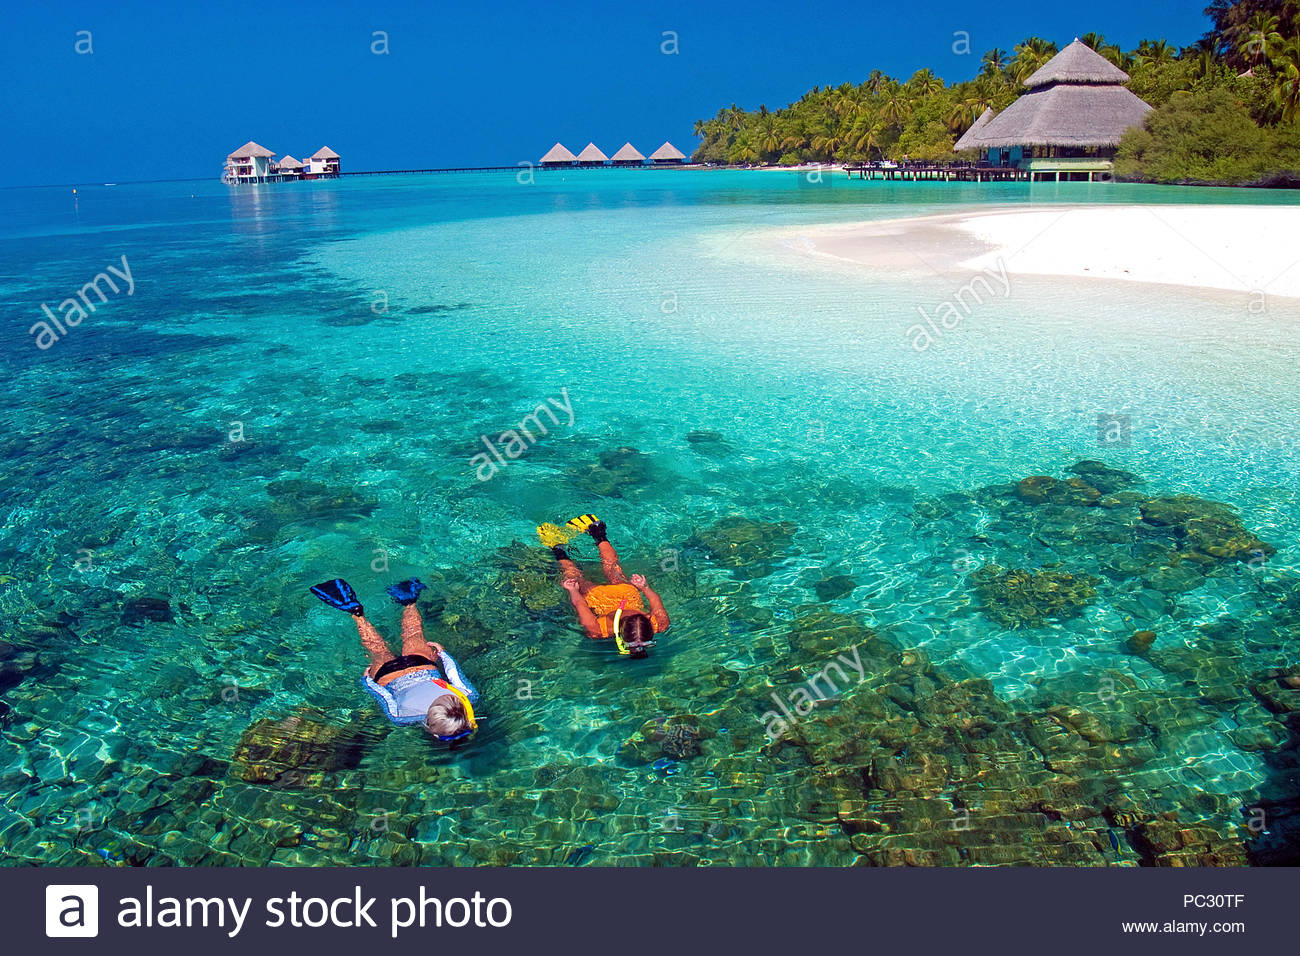 اجمل شاطئ في العالم 29